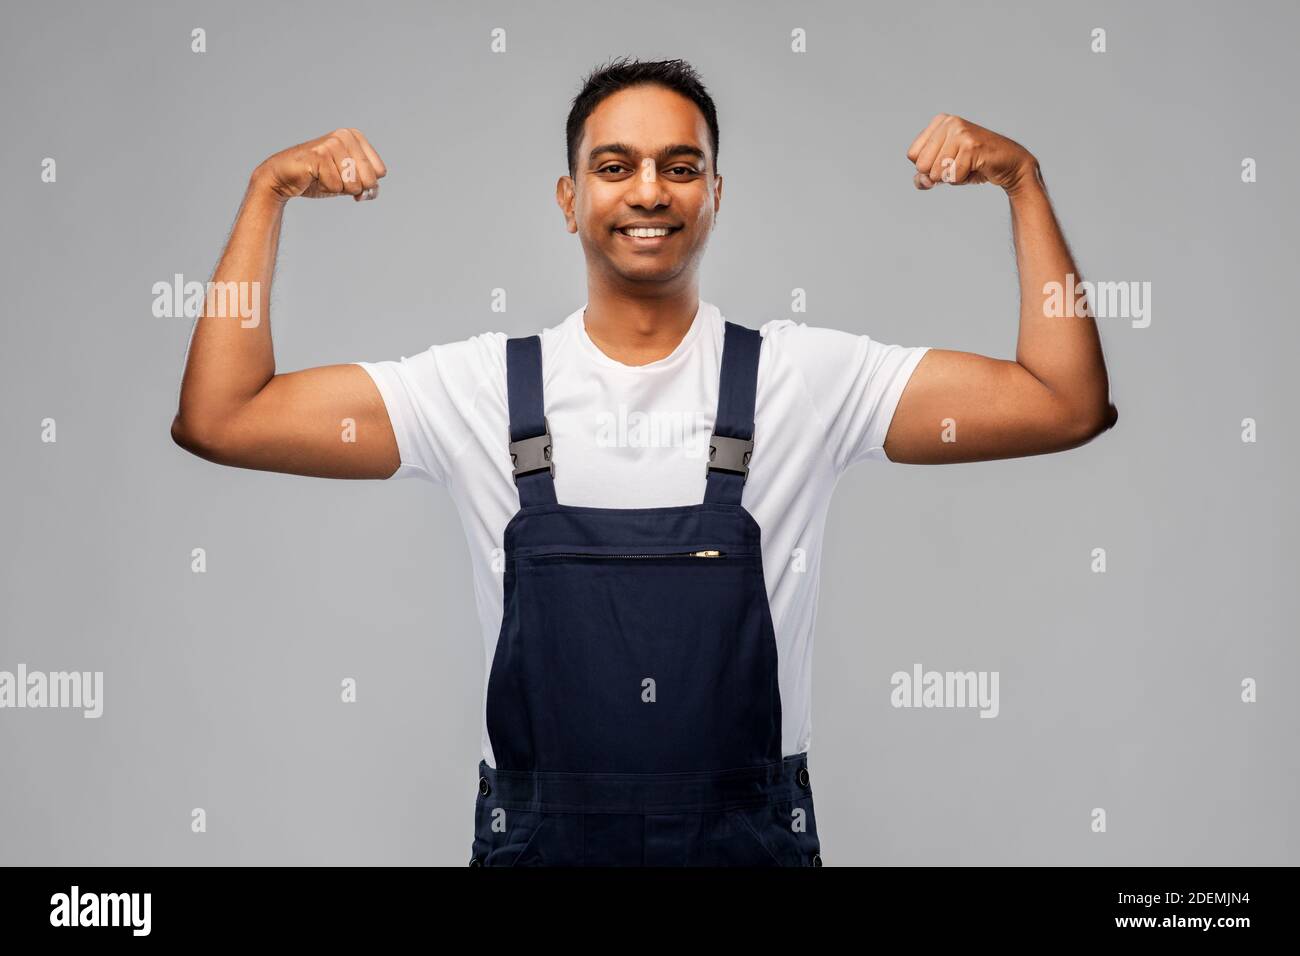 Lächelnder indischer Arbeiter oder Baumeister, der seine Macht zeigt Stockfoto